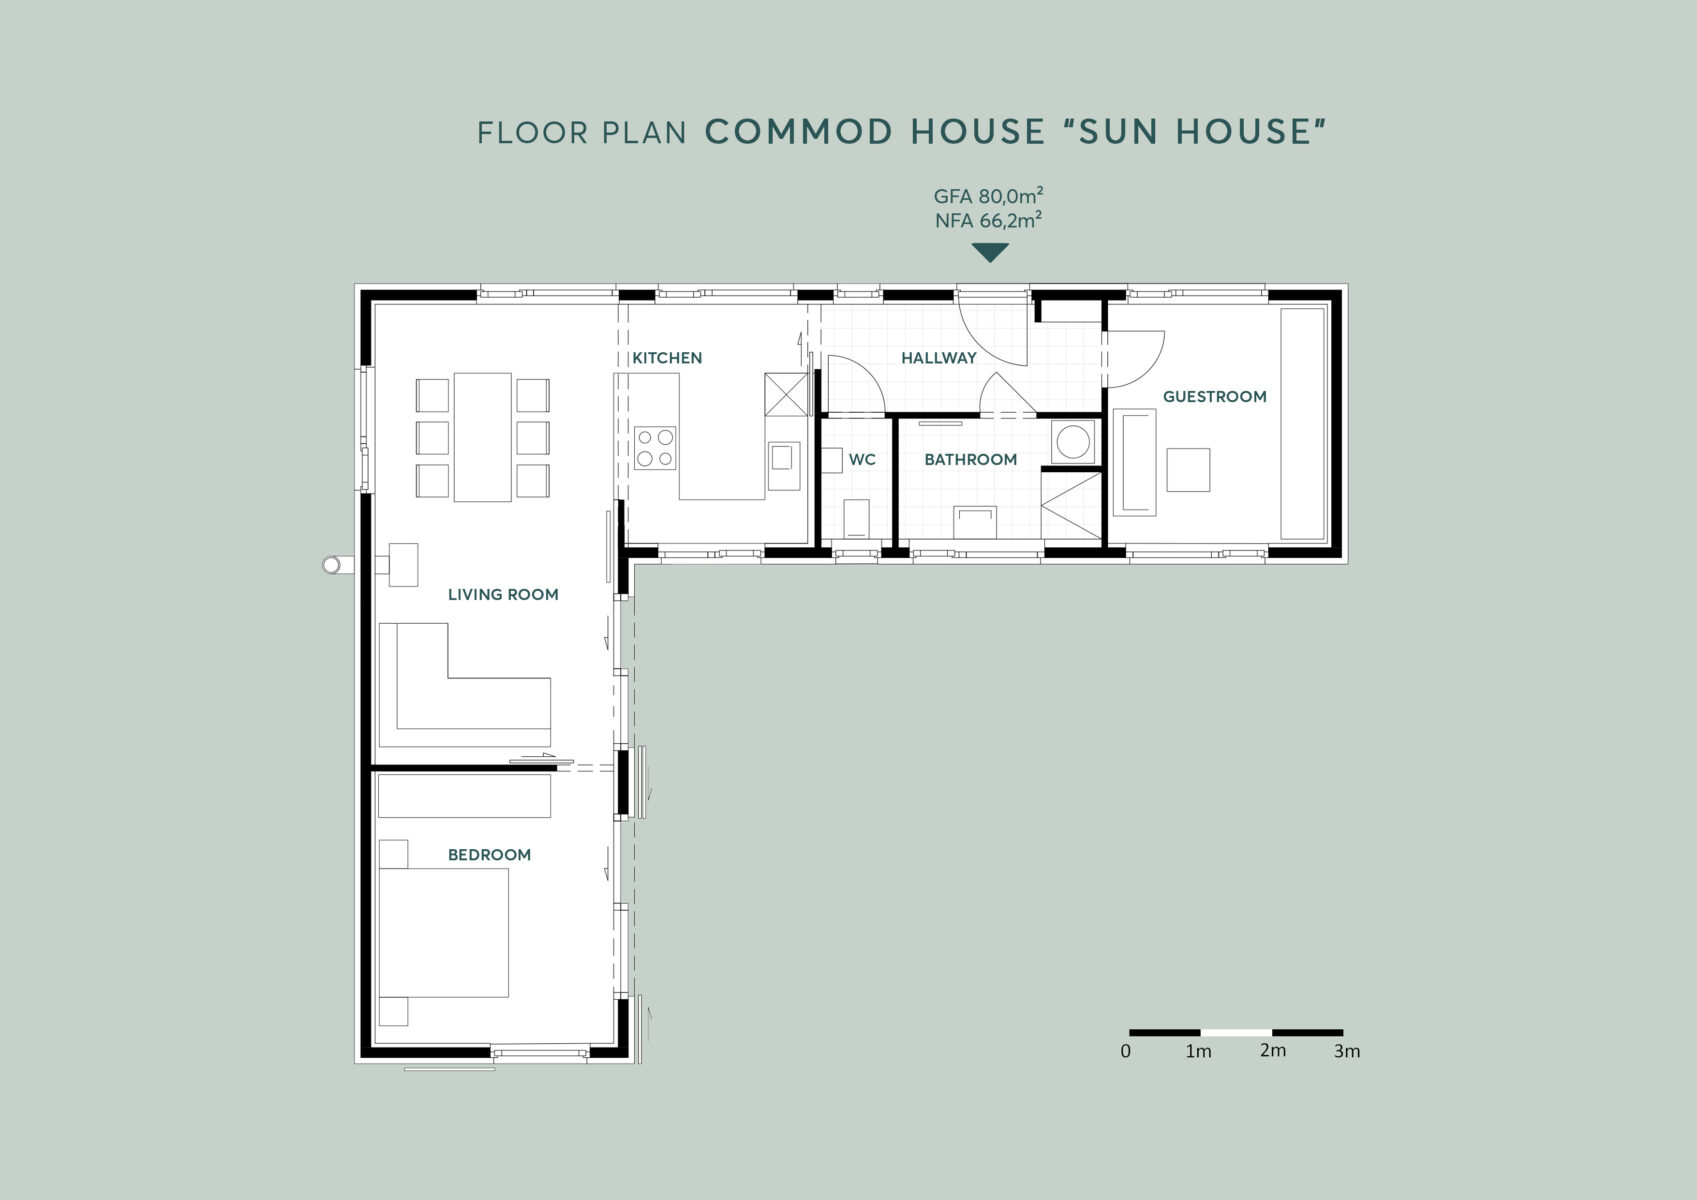 COMMOD HOUSE “Sun House” 80m² GFA